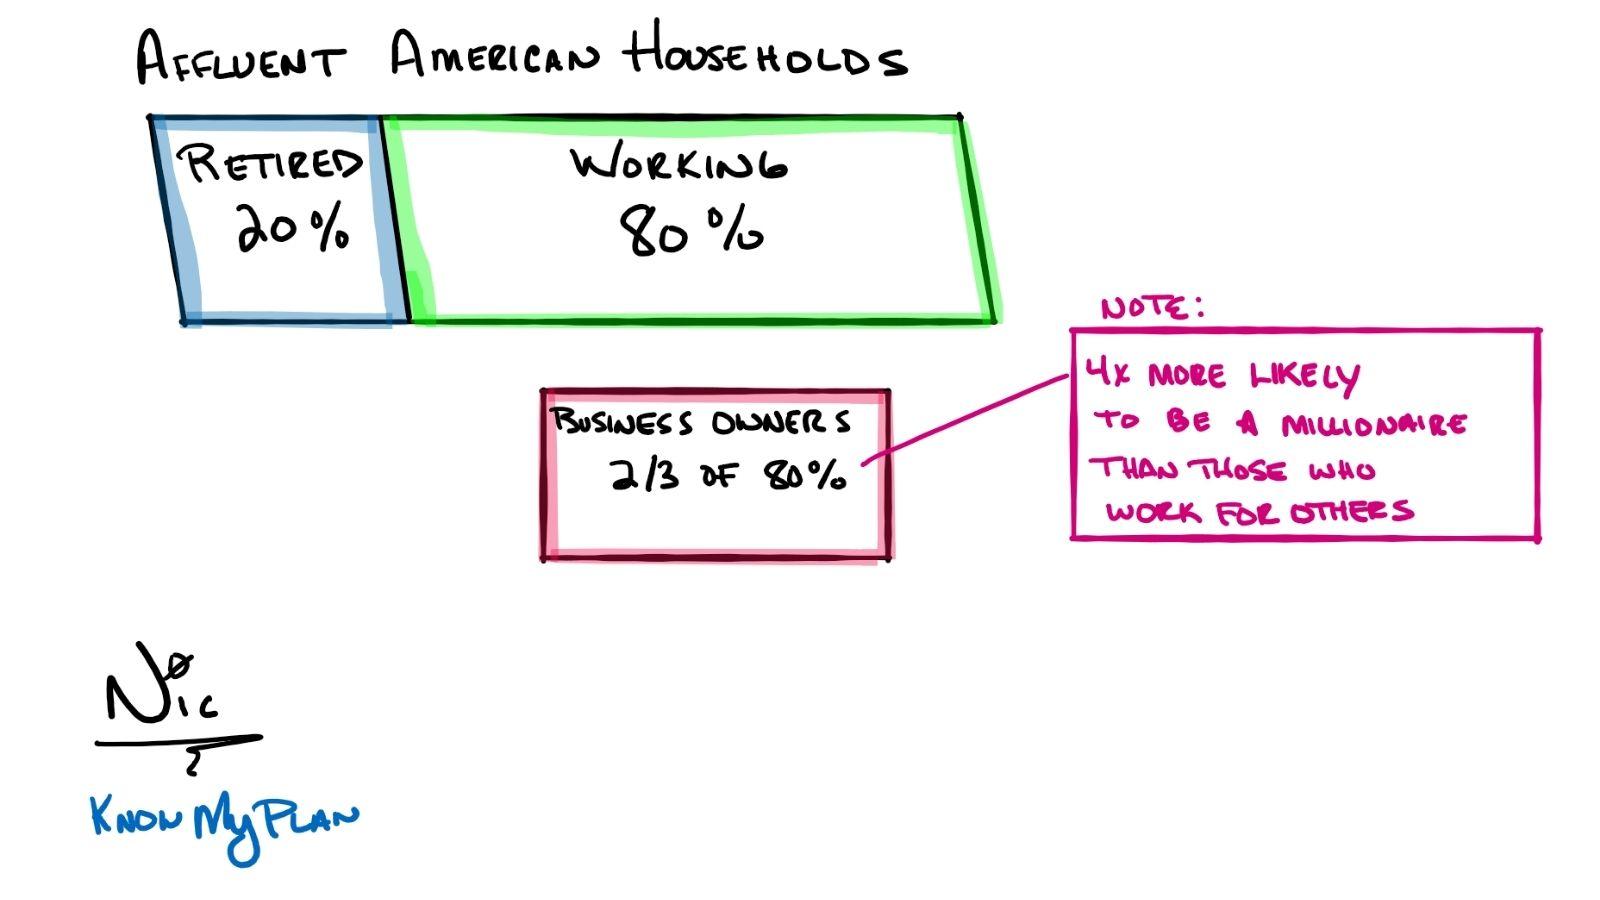 households